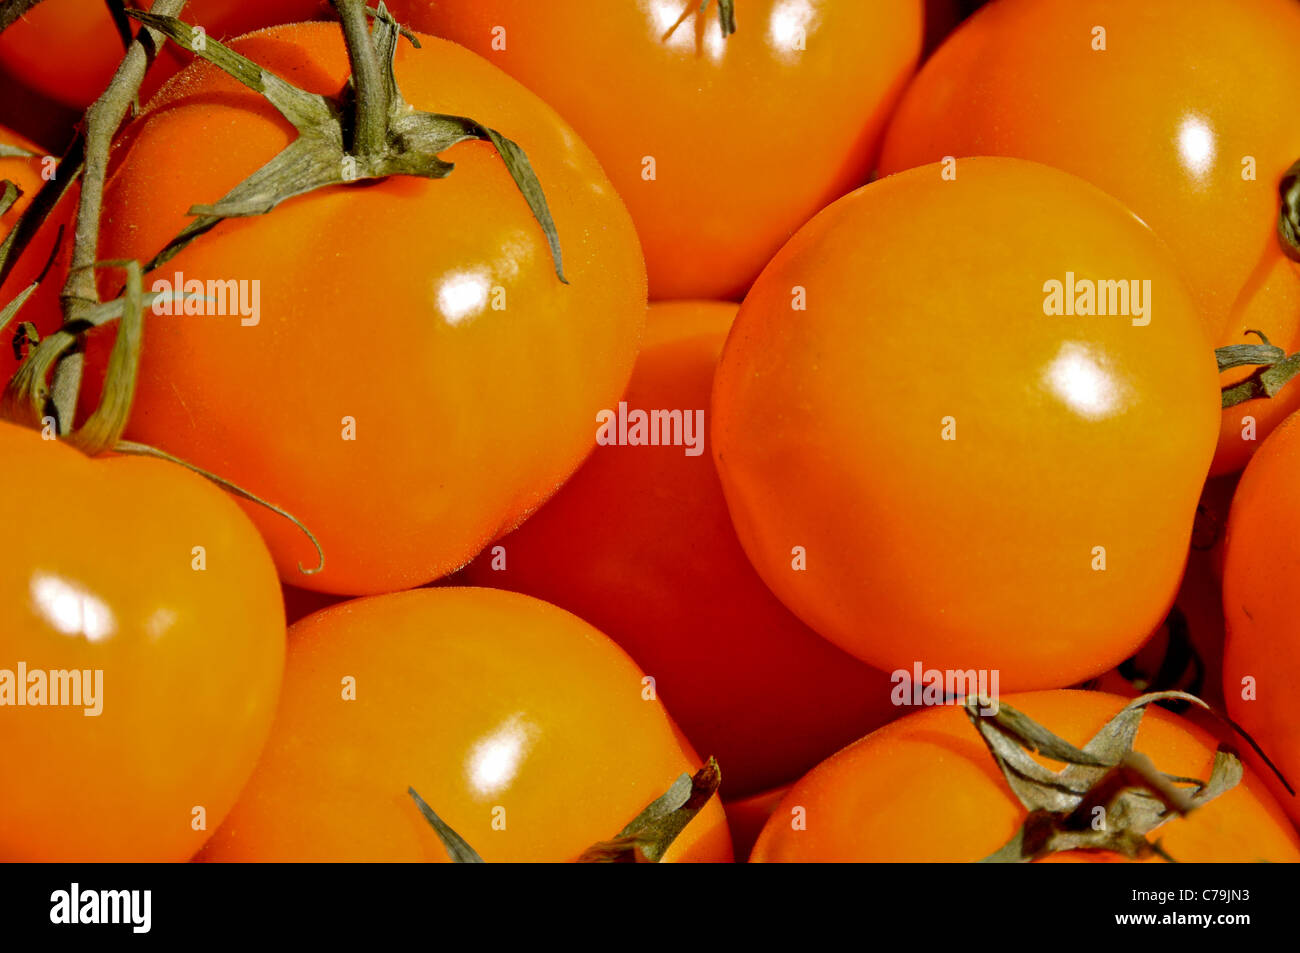 Close-Up of Orange Tomatoes Stock Photo